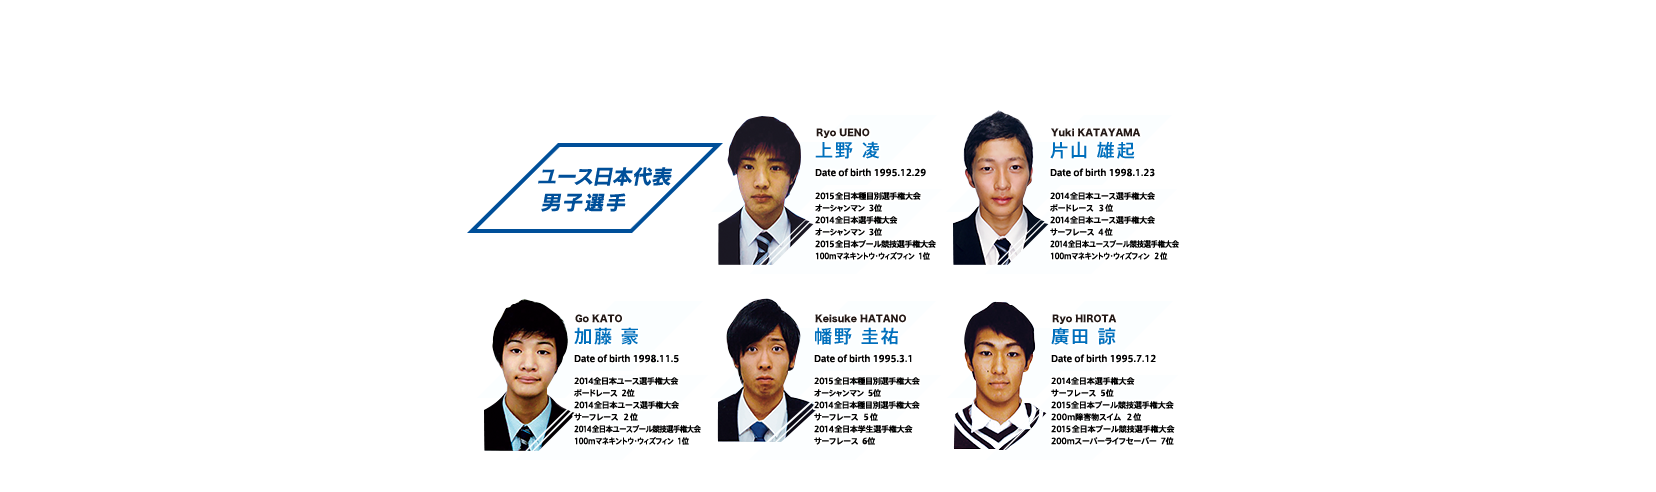 ユース日本代表男子選手